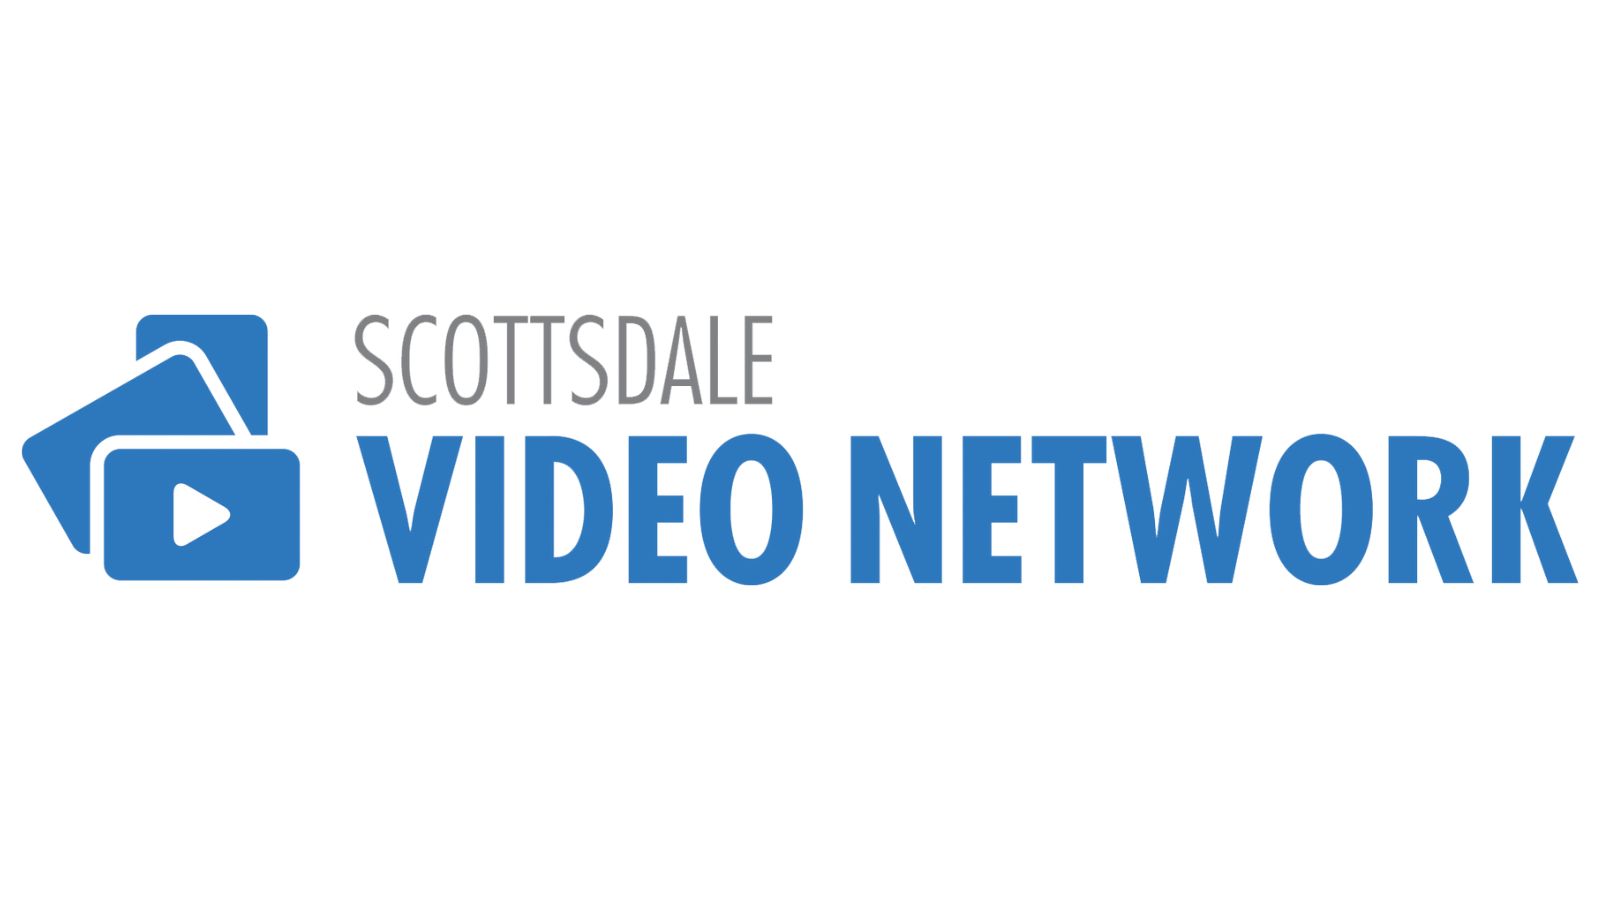 Scottsdale Video Network February Program Guide image